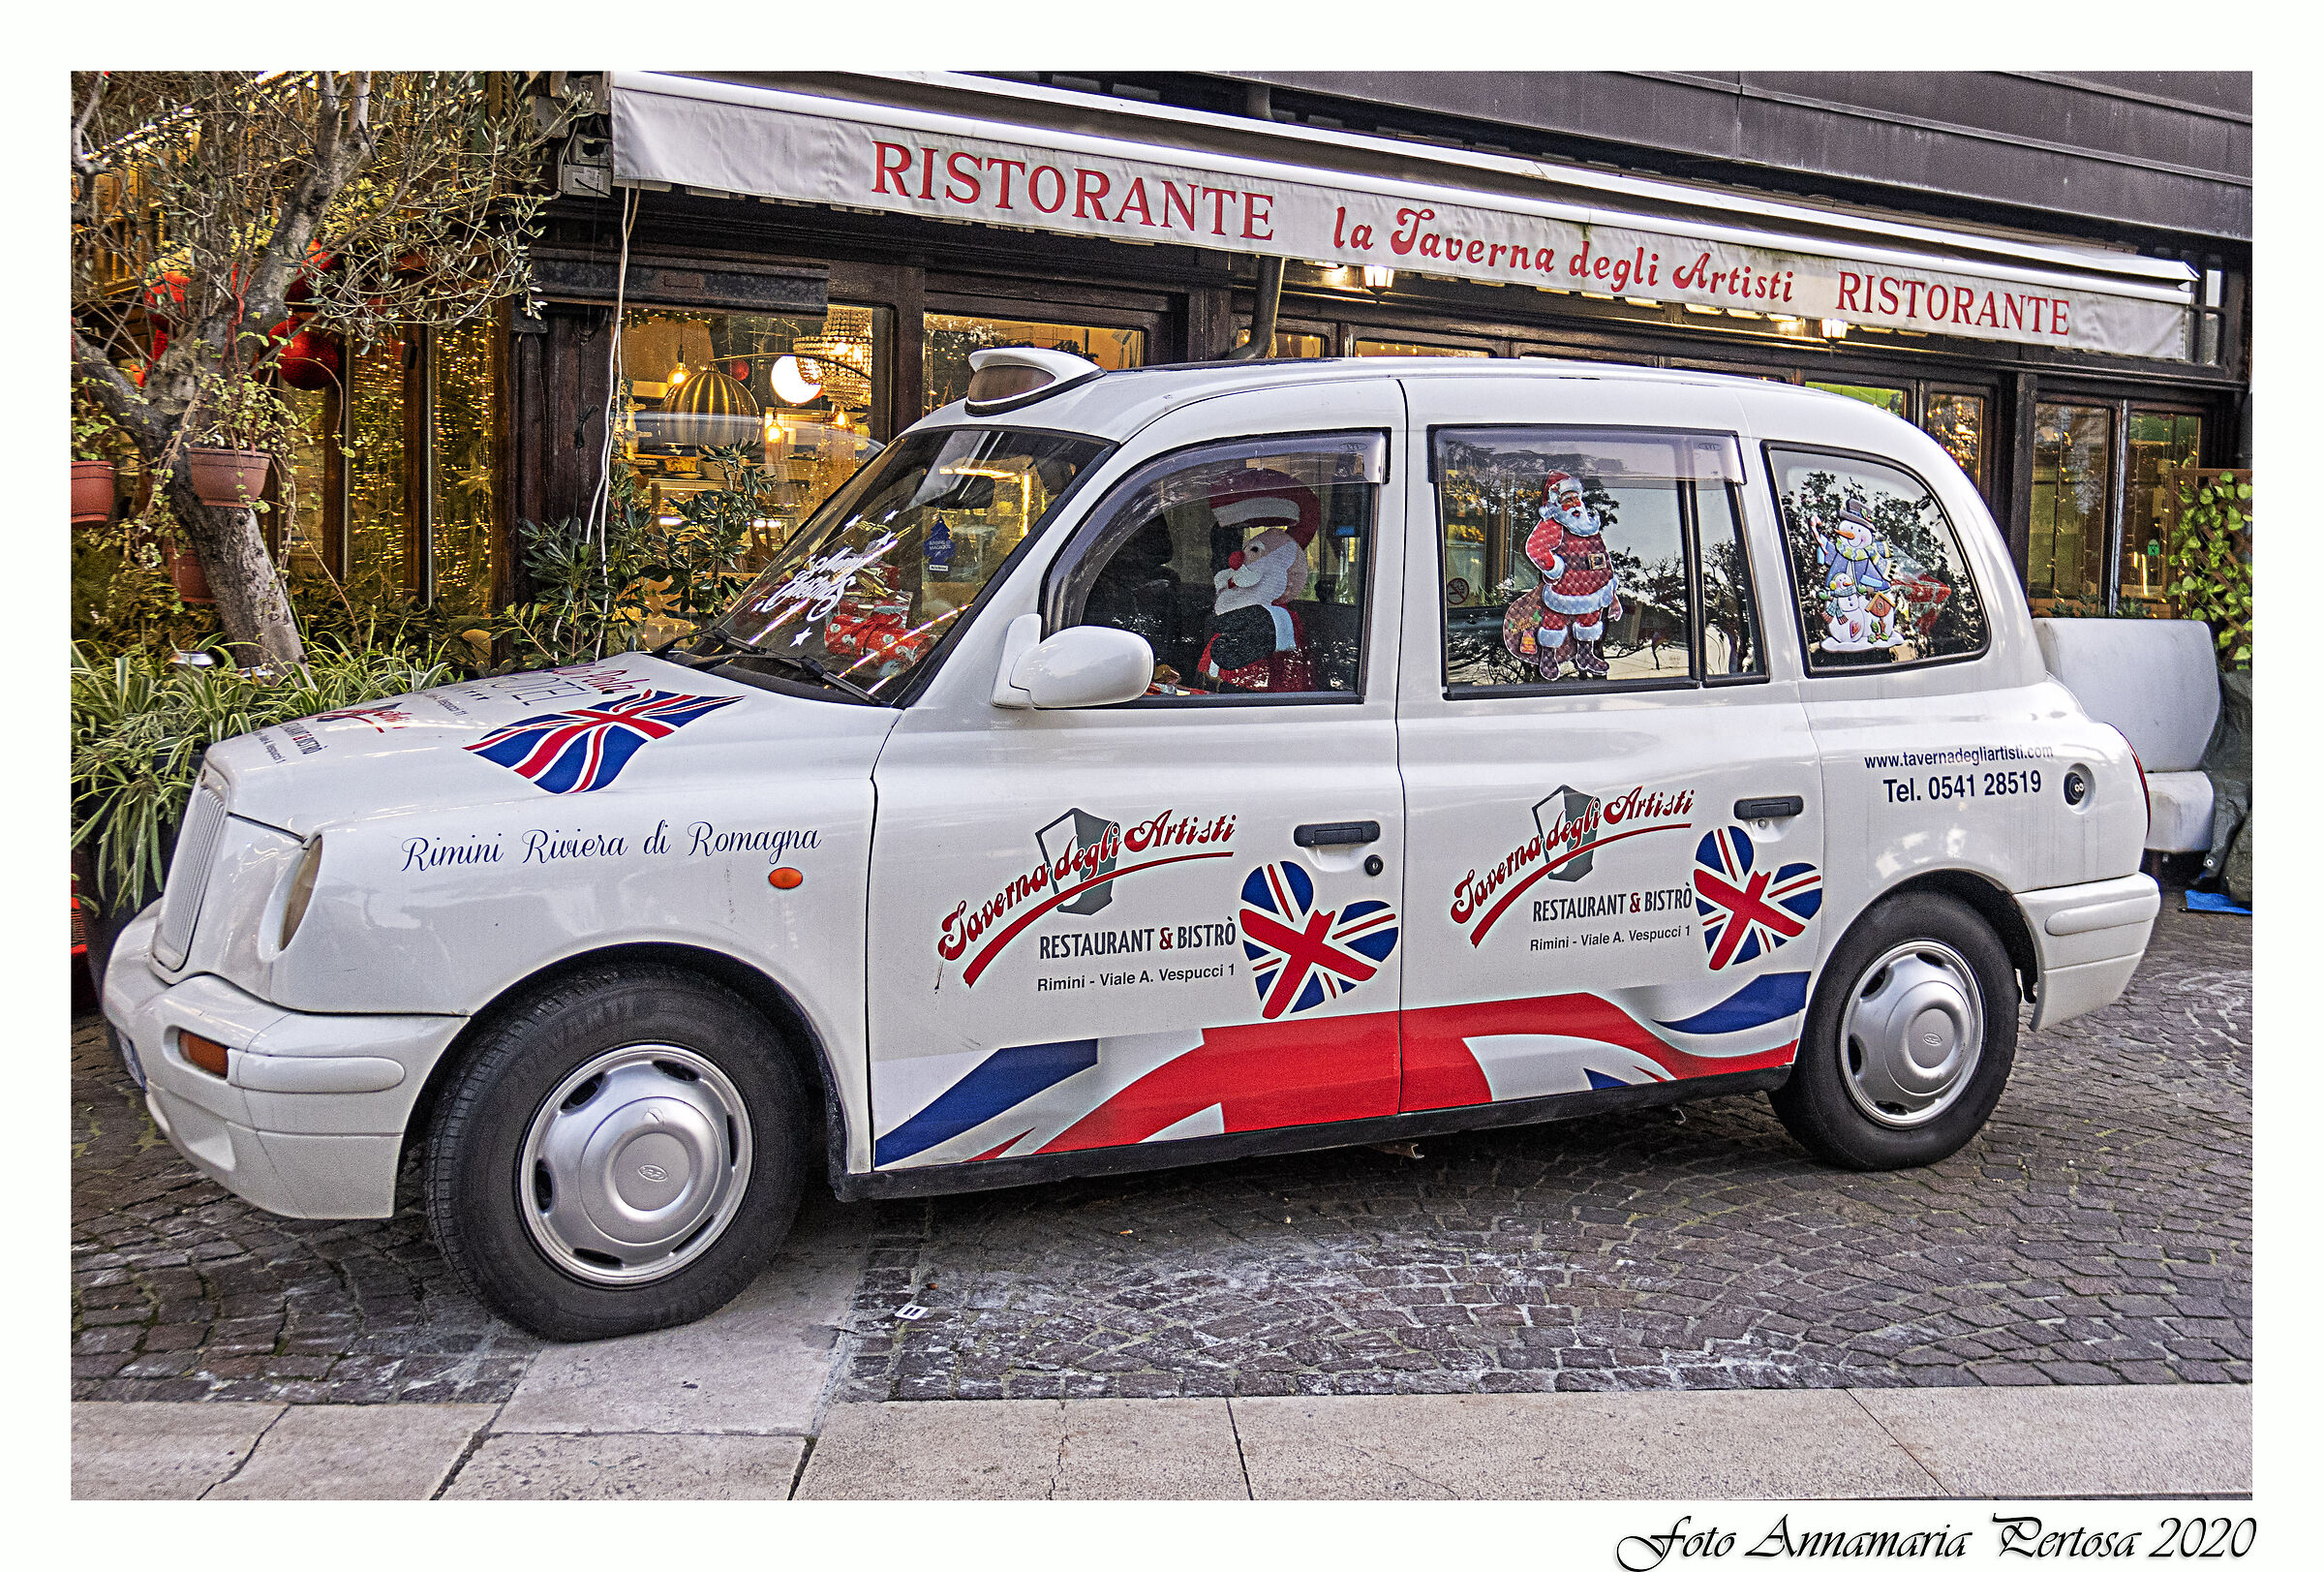 An English taxi in Rimini...